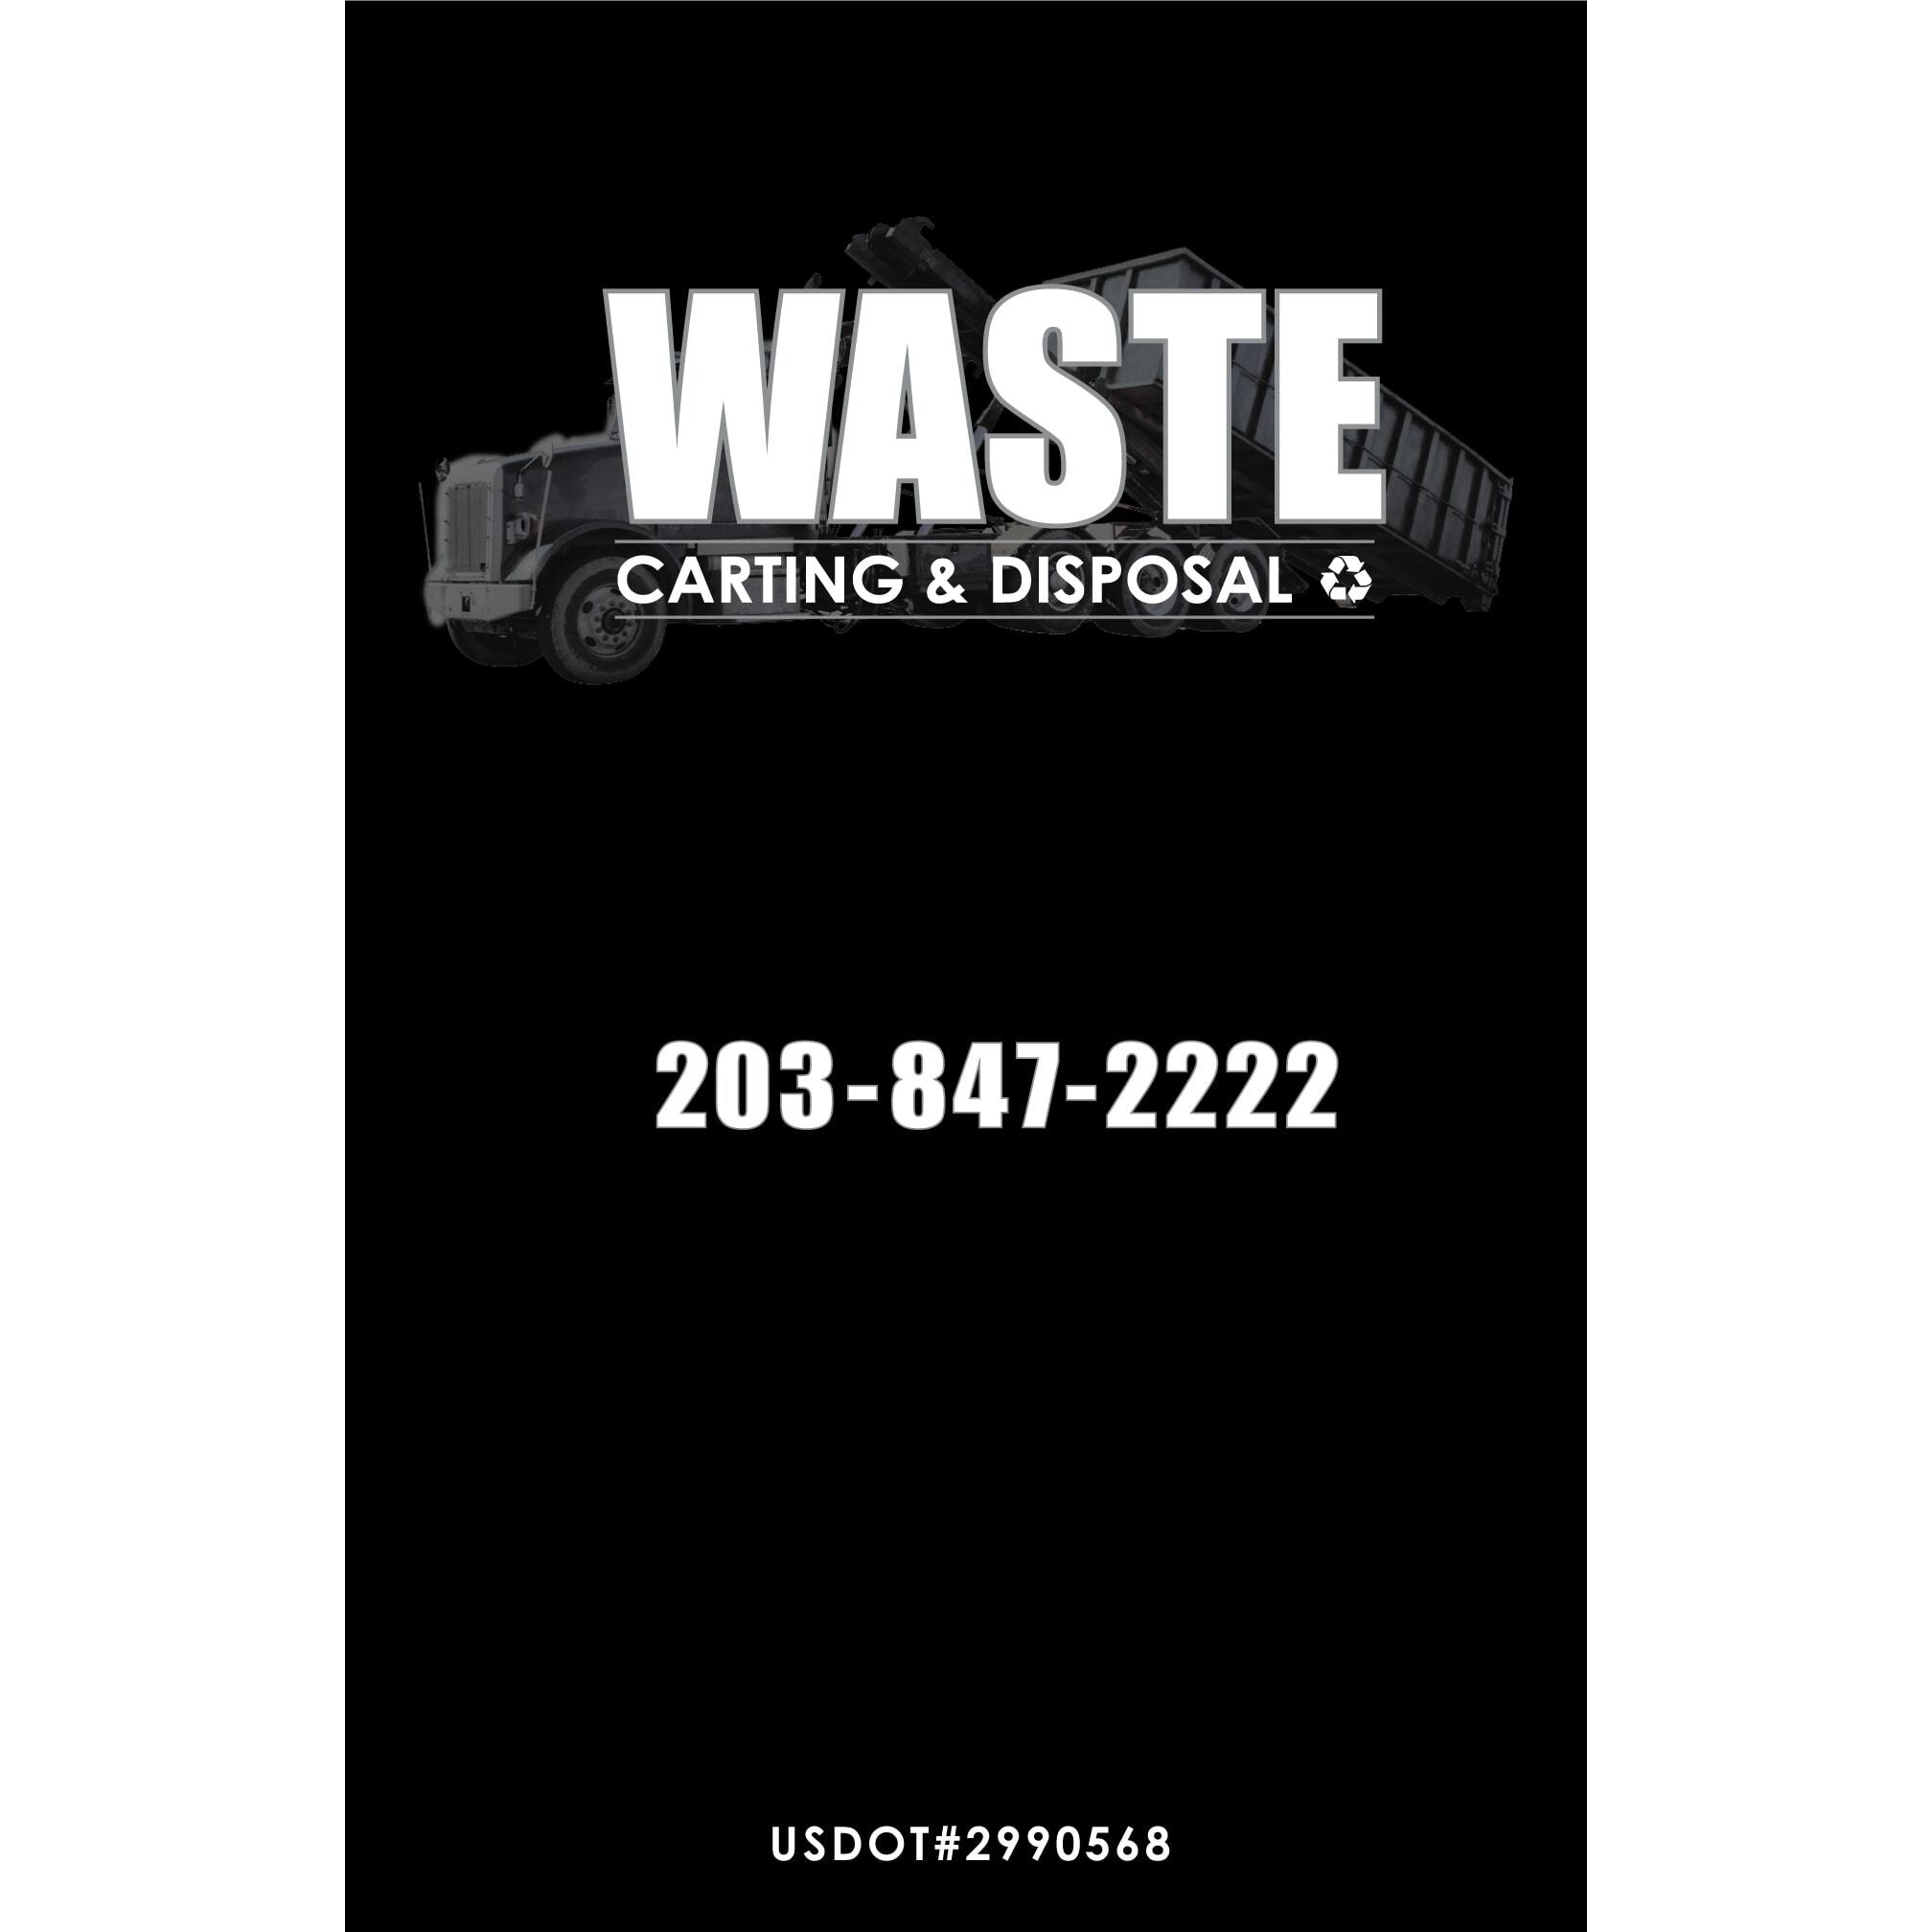 Waste Carting & Disposal